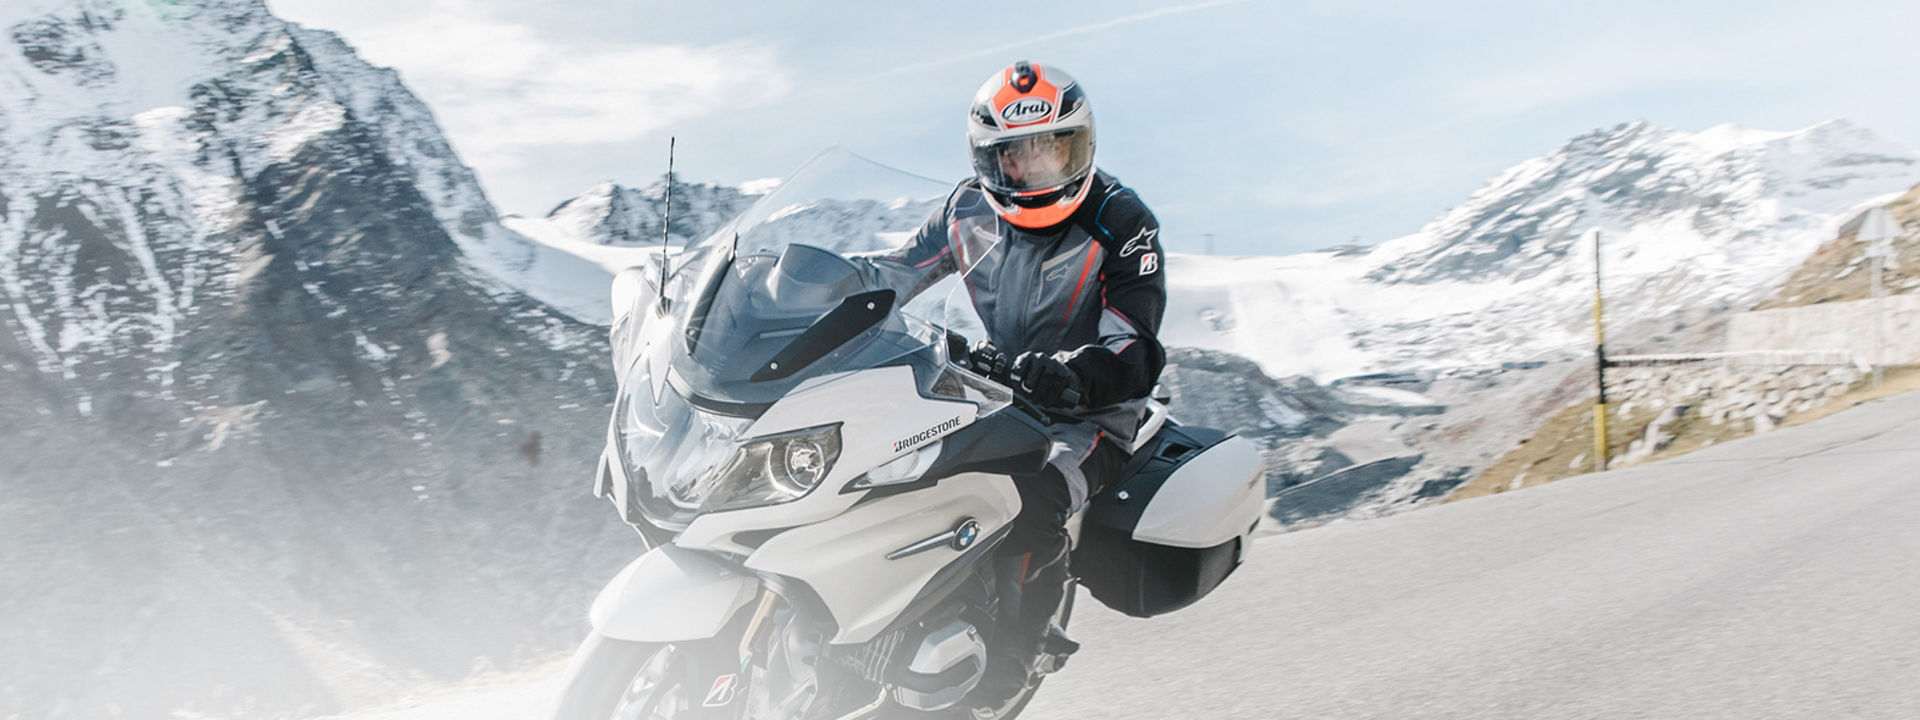 Αυτή η εικόνα δείχνει έναν αναβάτη που οδηγεί τη μοτοσικλέτα τους με touring ελαστικά Bridgestone σε ένα γραφικό δρόμο με βουνά στο βάθος.